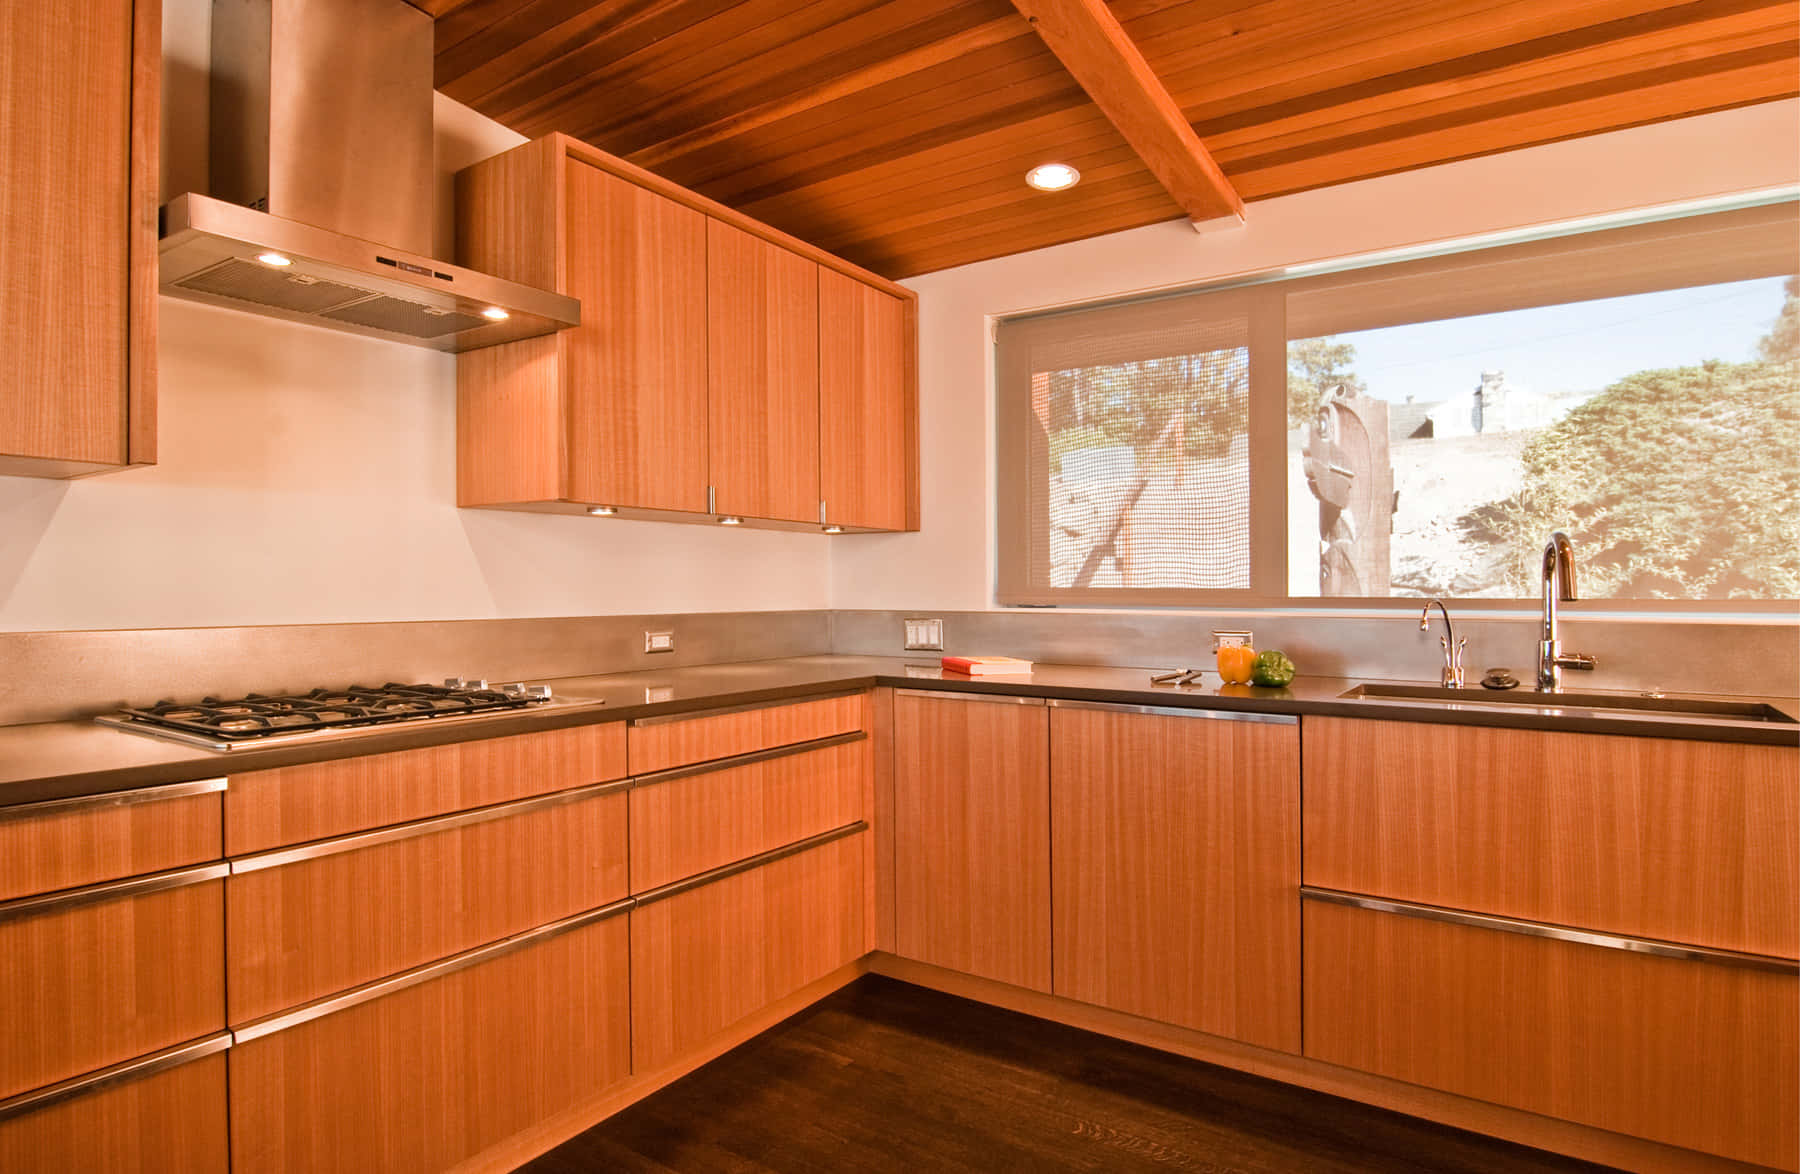 Elegant Wooden Cabinets In A Modern Kitchen